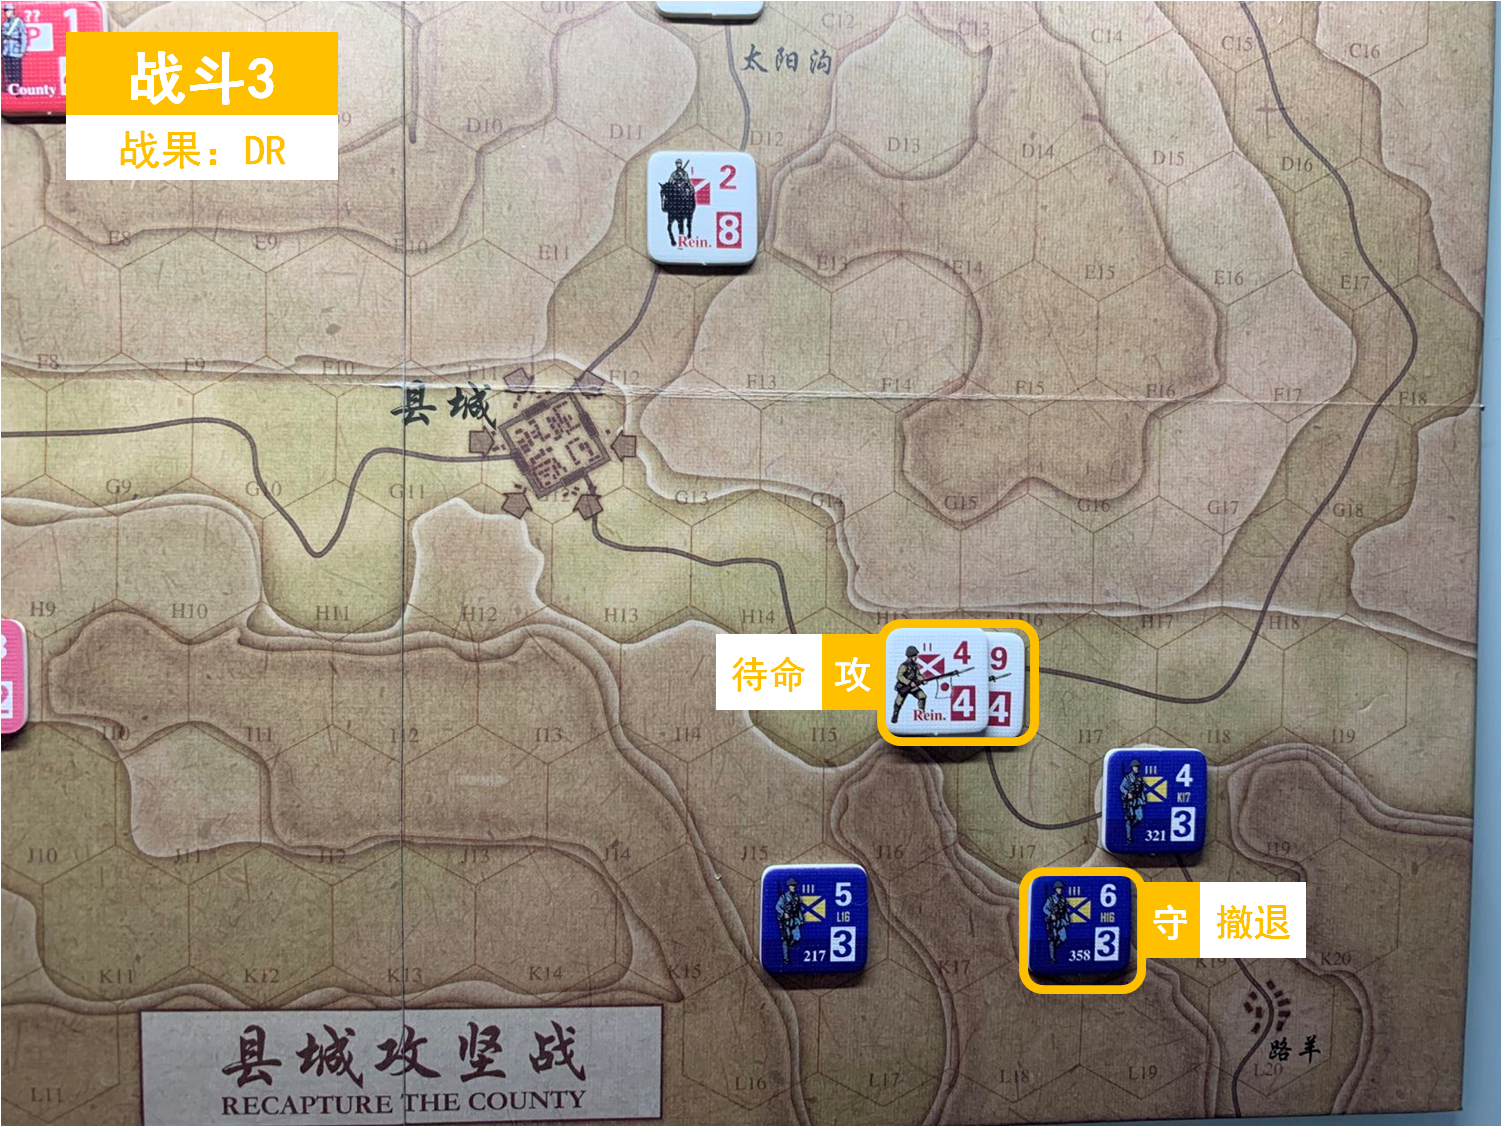 第三回合 日方戰鬥階段 戰鬥3 戰鬥結果